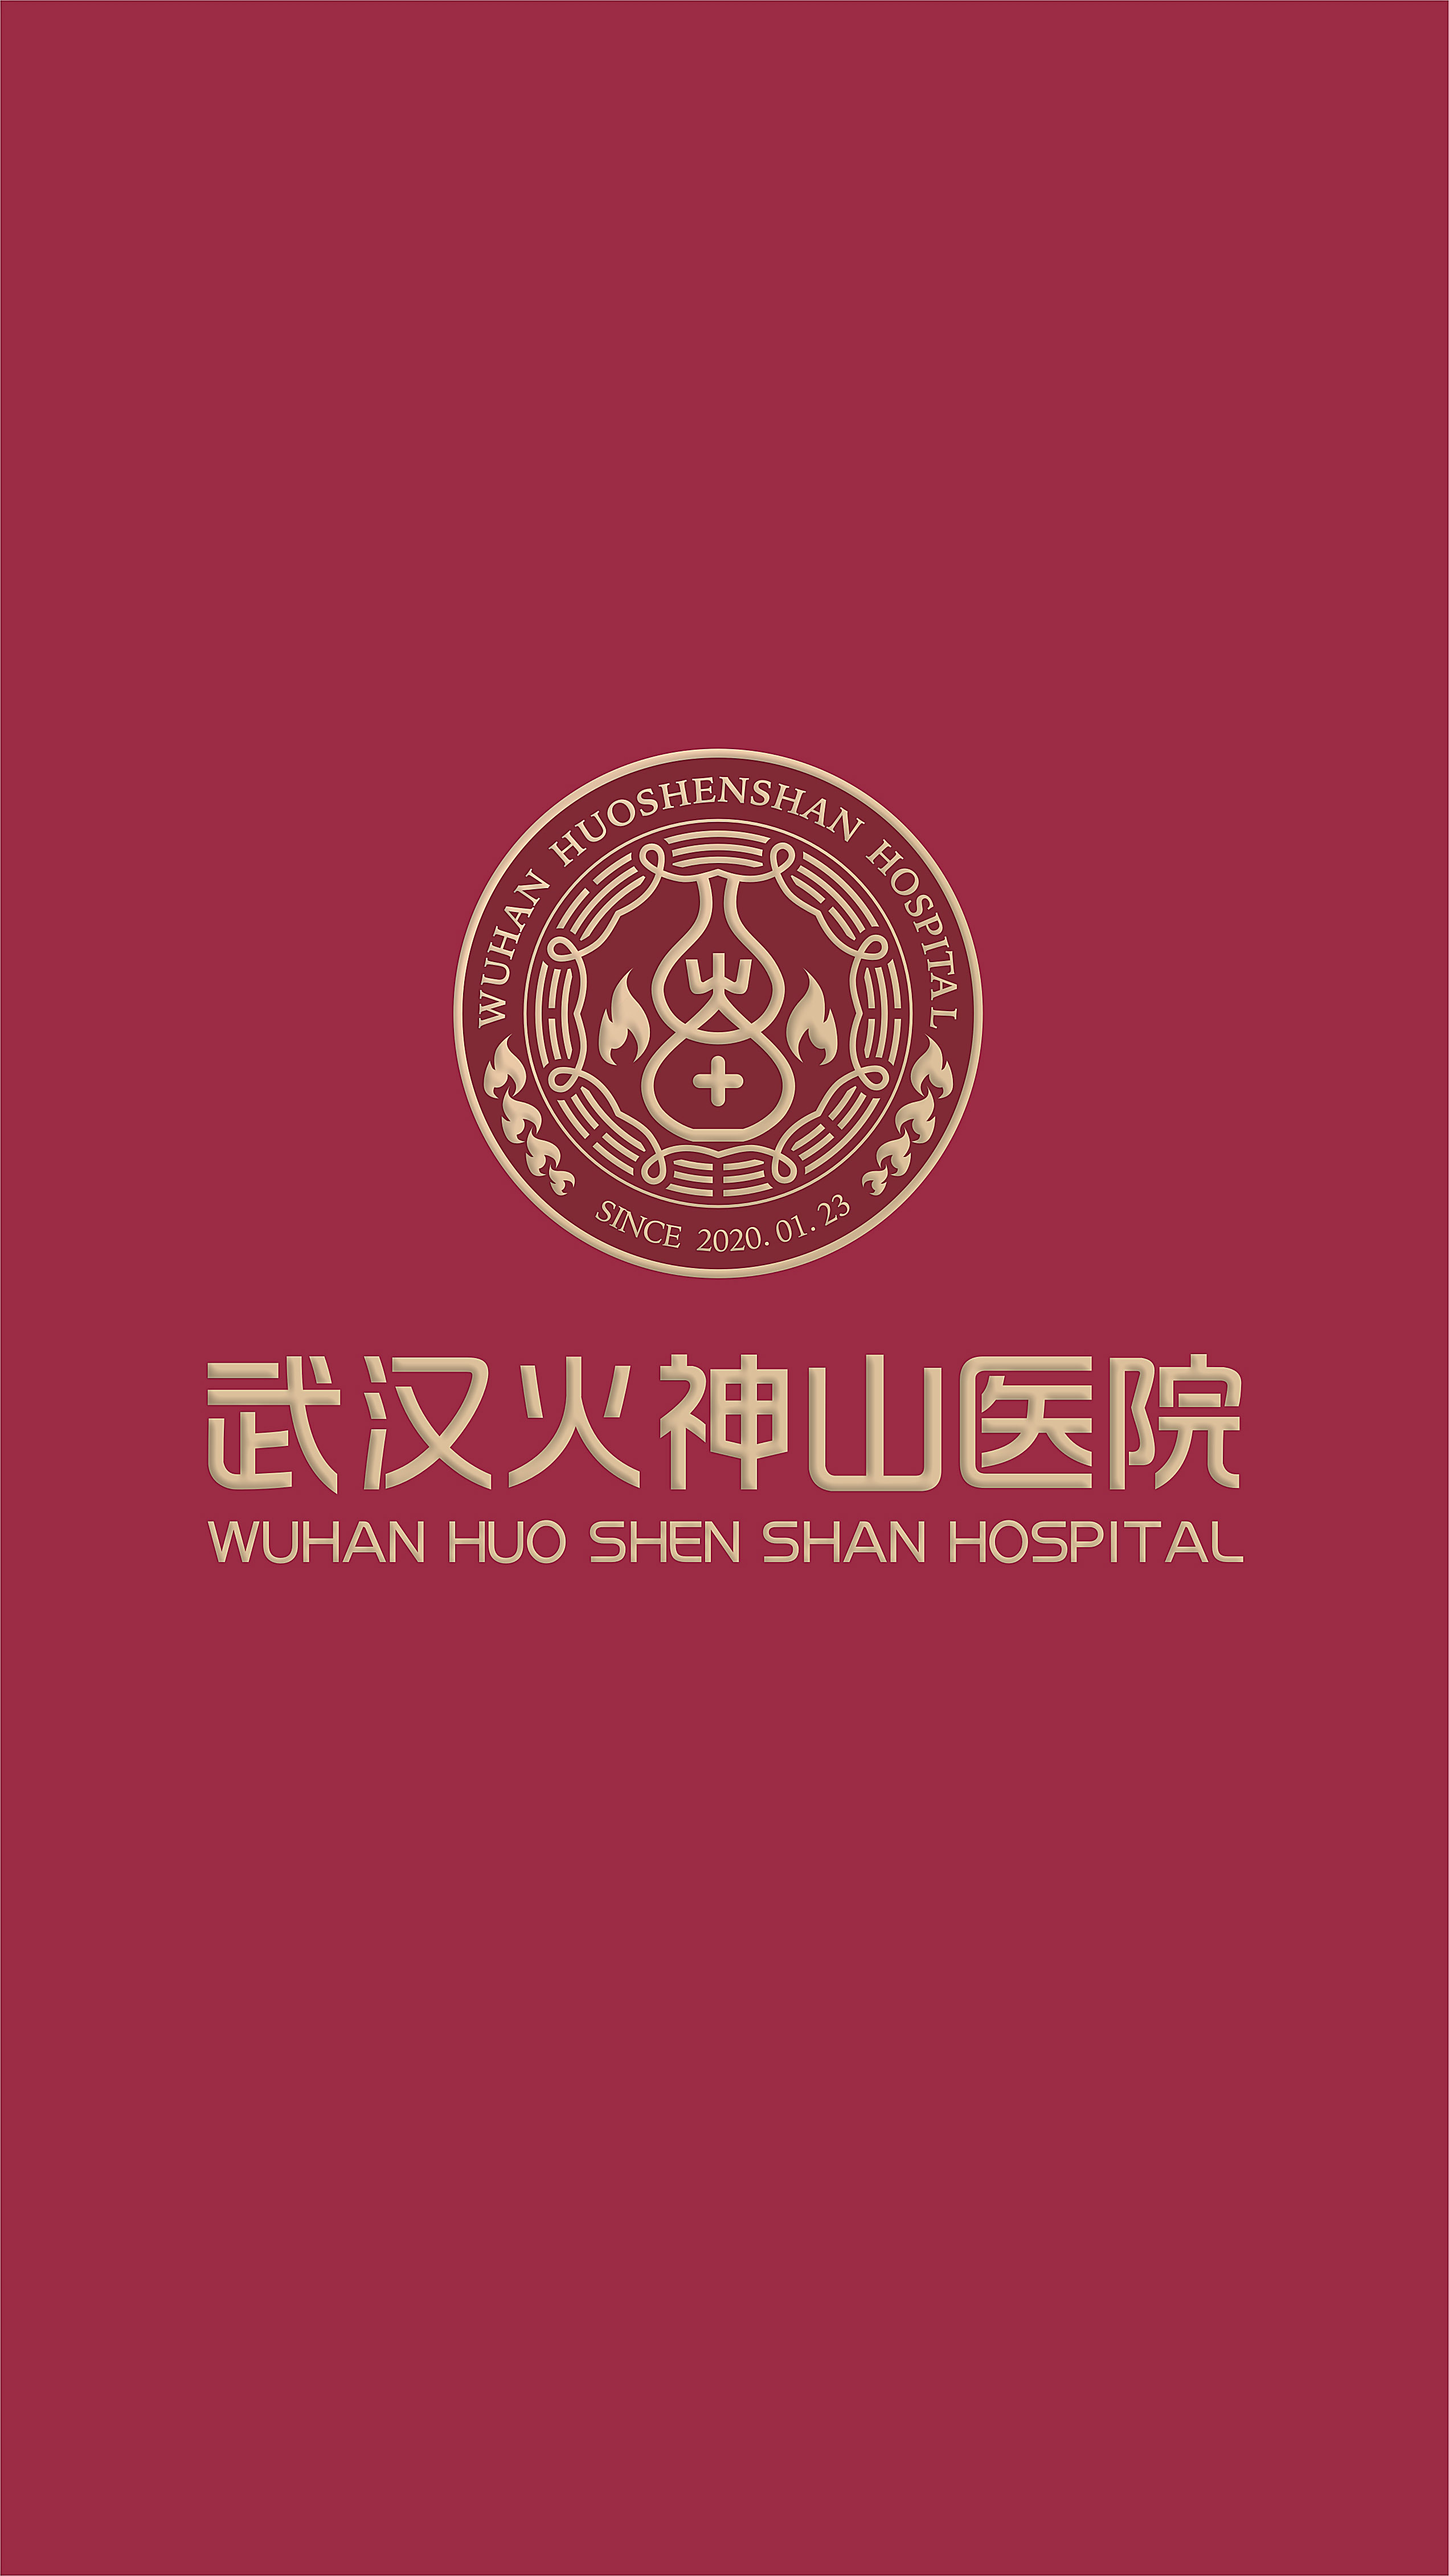 雷神山火神山logo图片